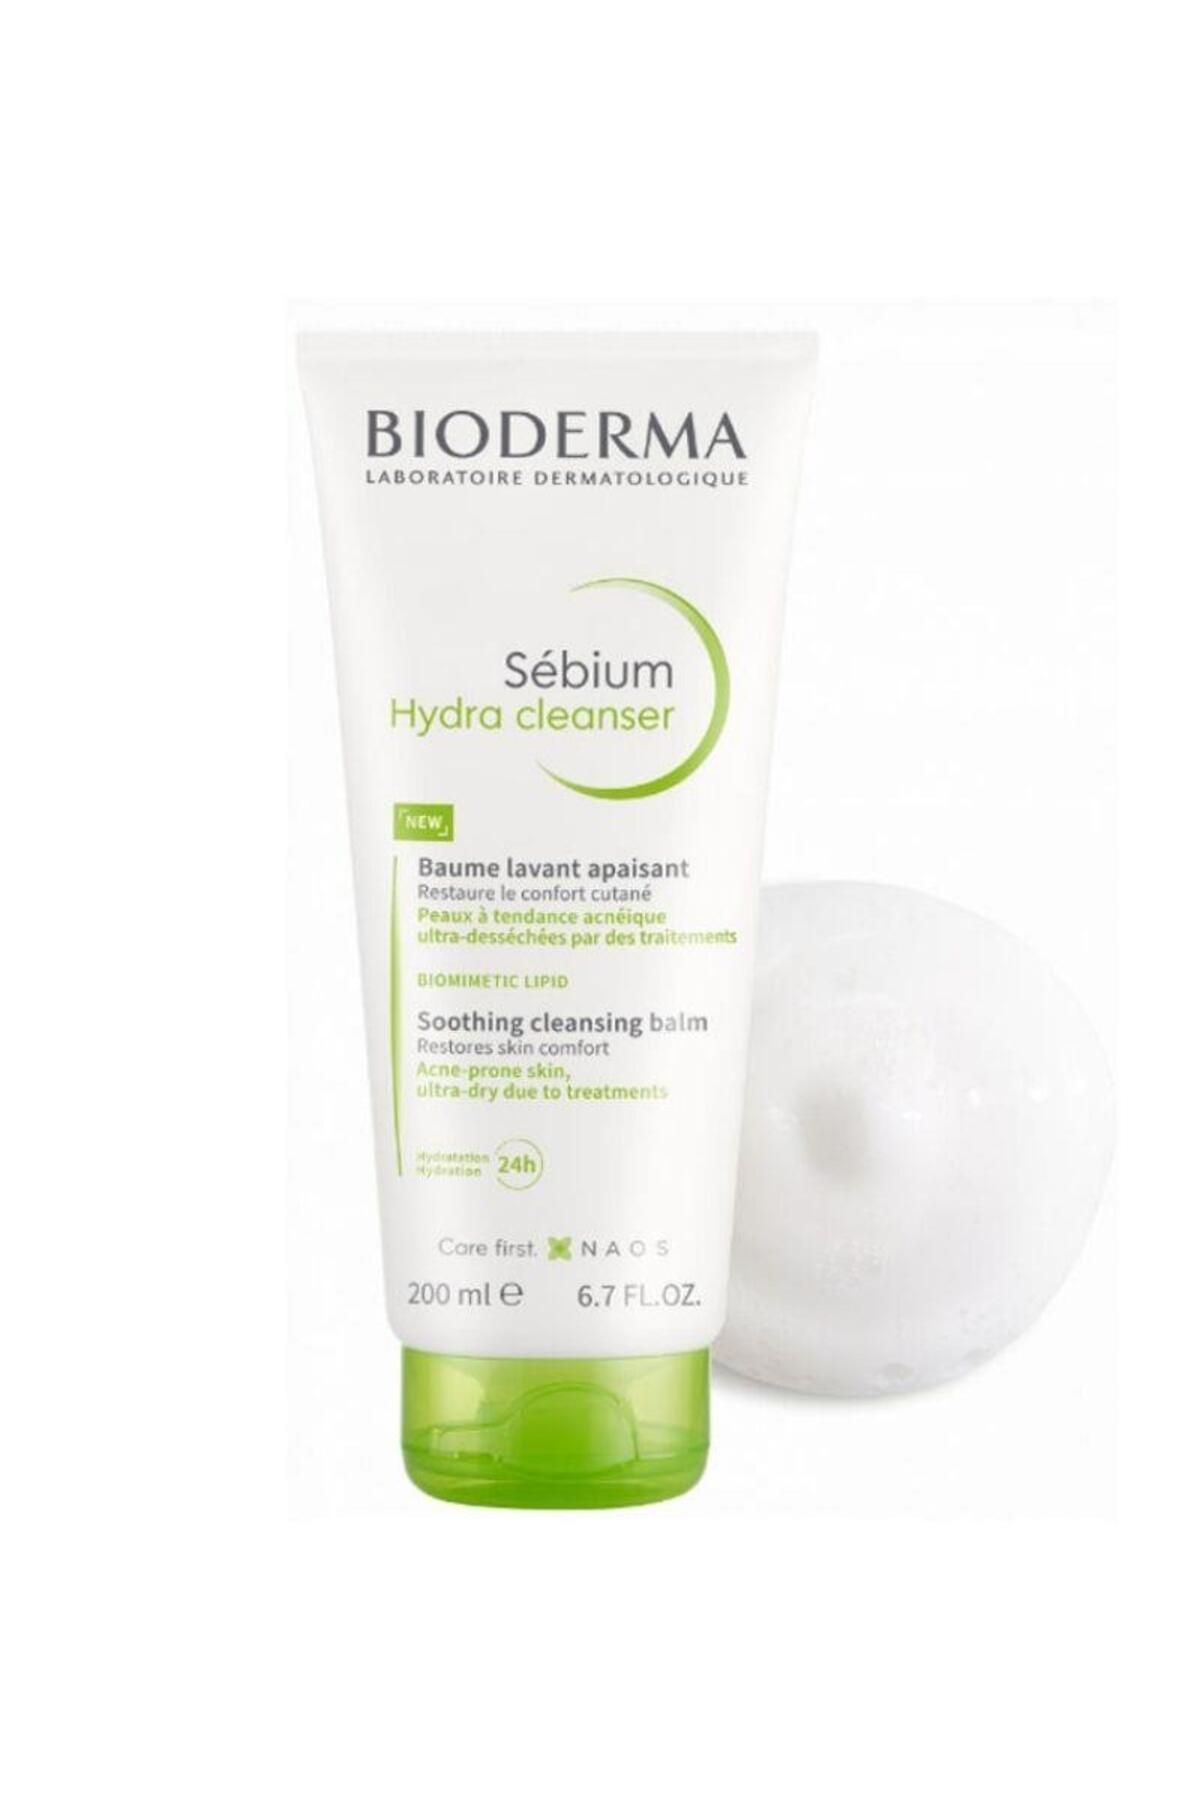 Bioderma Sebium Hydra Cleanser 200 ml